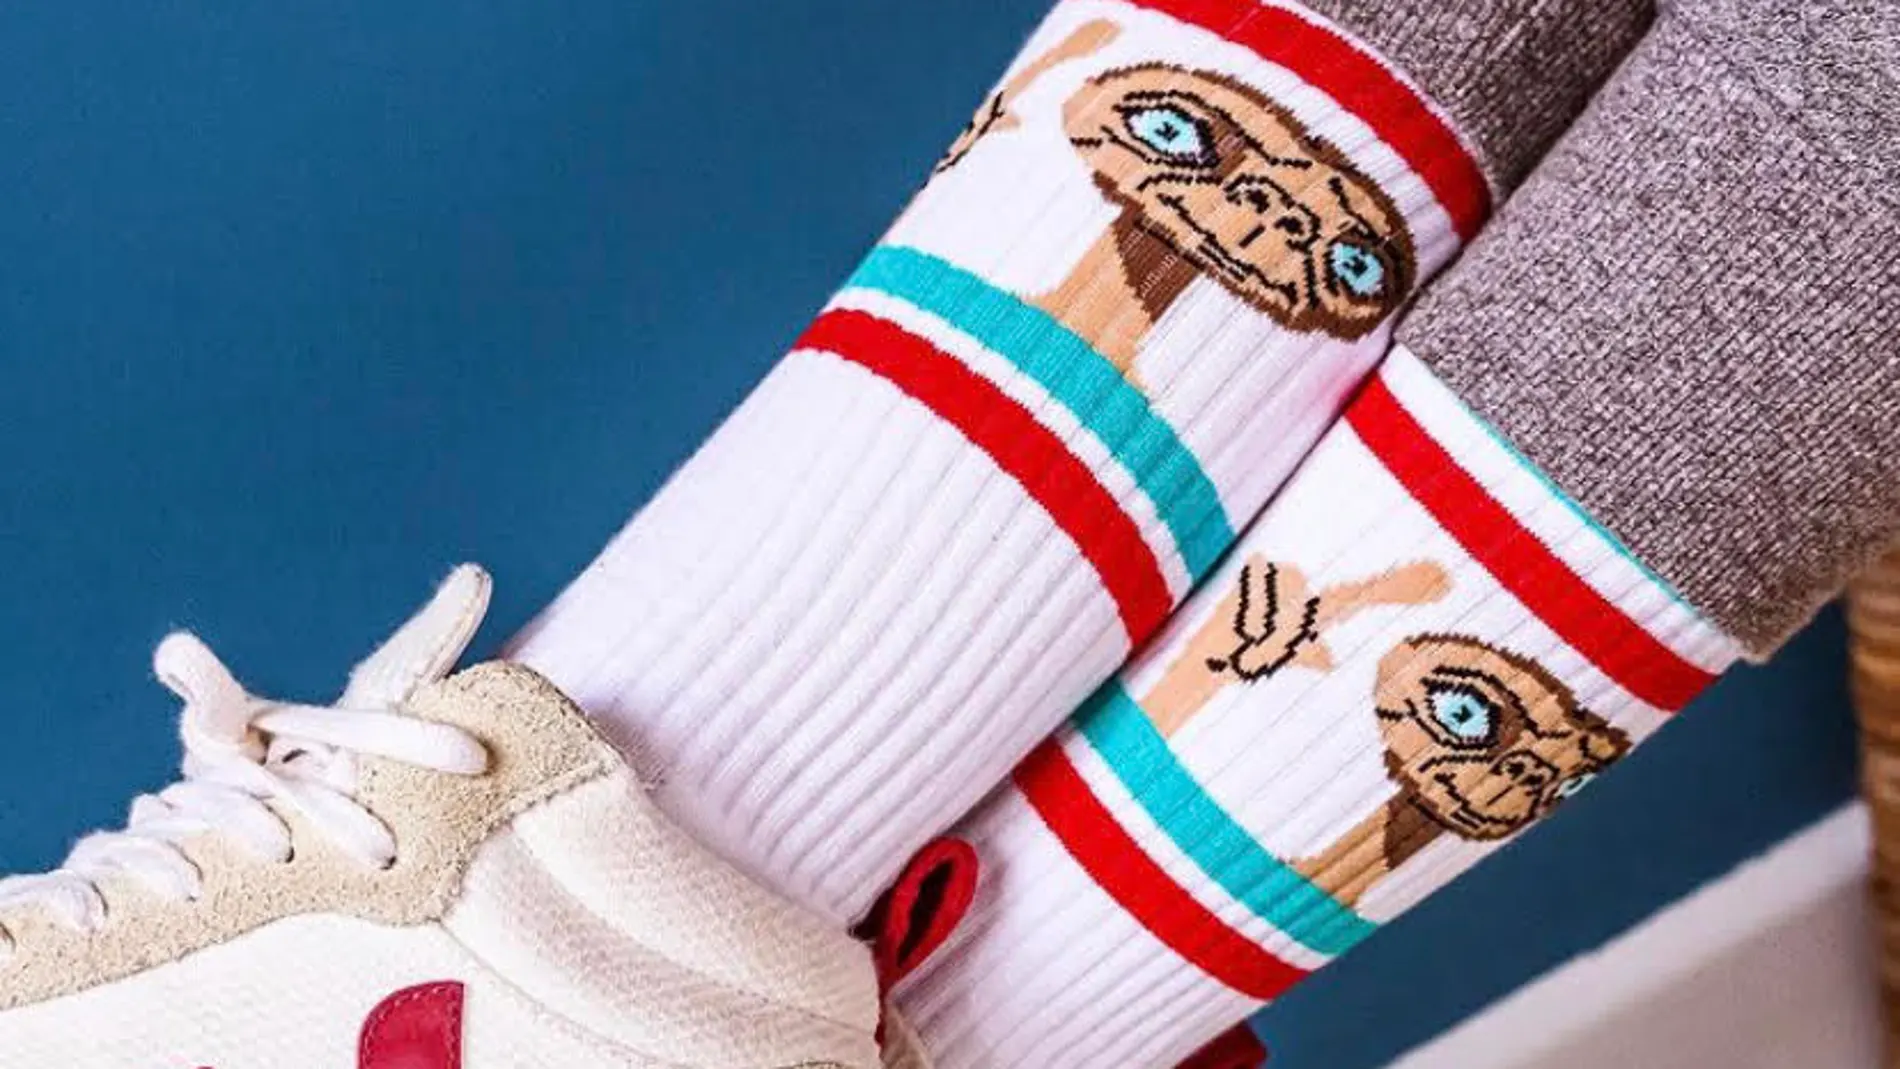 Los calcetines de rebajas más bonitos para apuntarte a la nueva tendencia estrella entre las famosas.